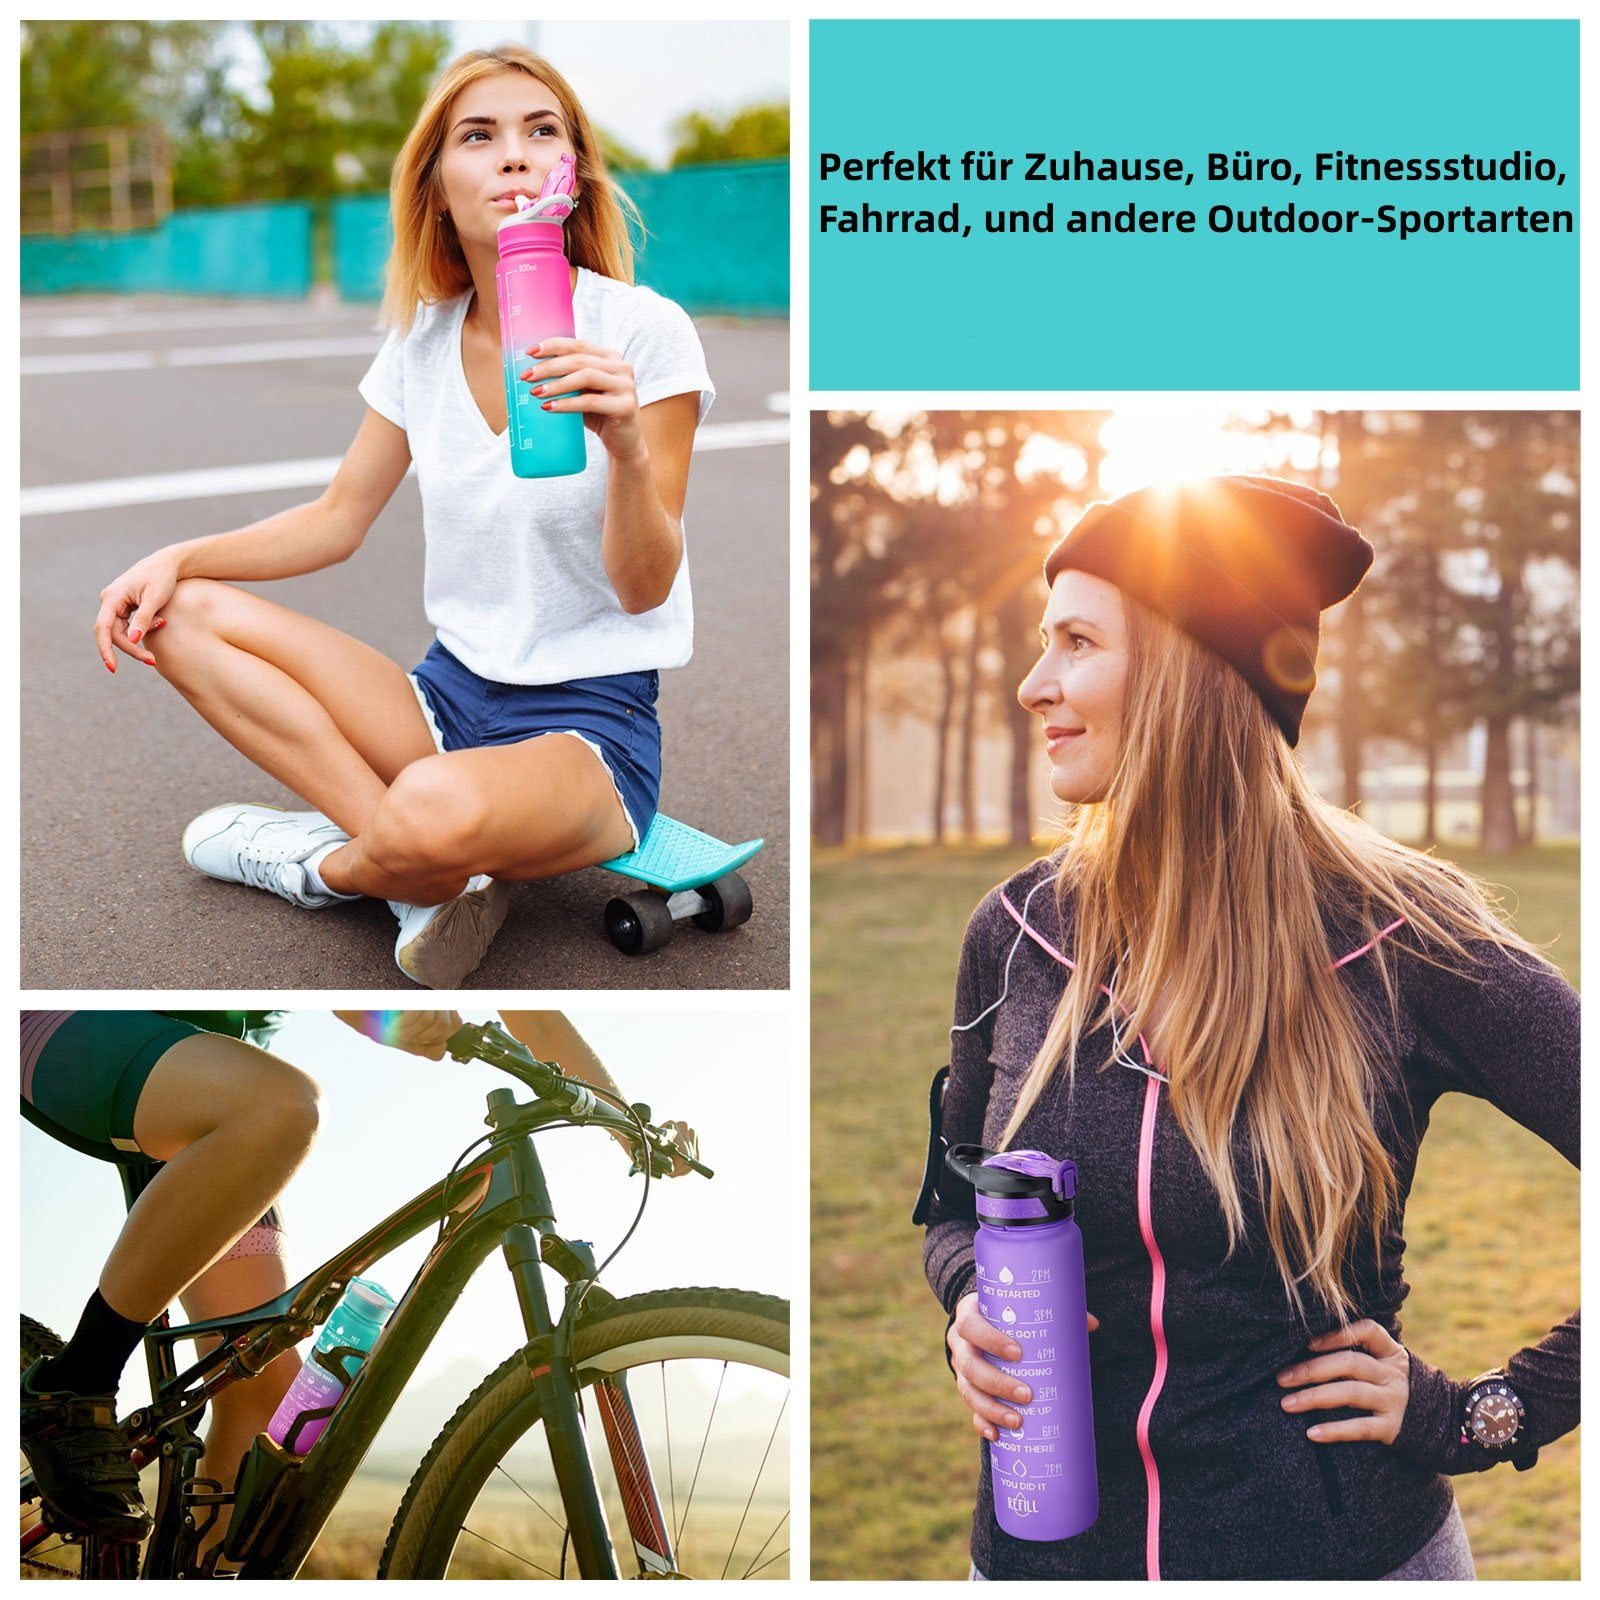 Liter 1L, 1 Wasserflasche Outdoor Wandern Camping Zeitmarkierung und Fitness Trinkflasche Strohhalm Fahrrad Sport Sportflasche BPA-Frei Auslaufsicher Gelb/Grau OKWISH